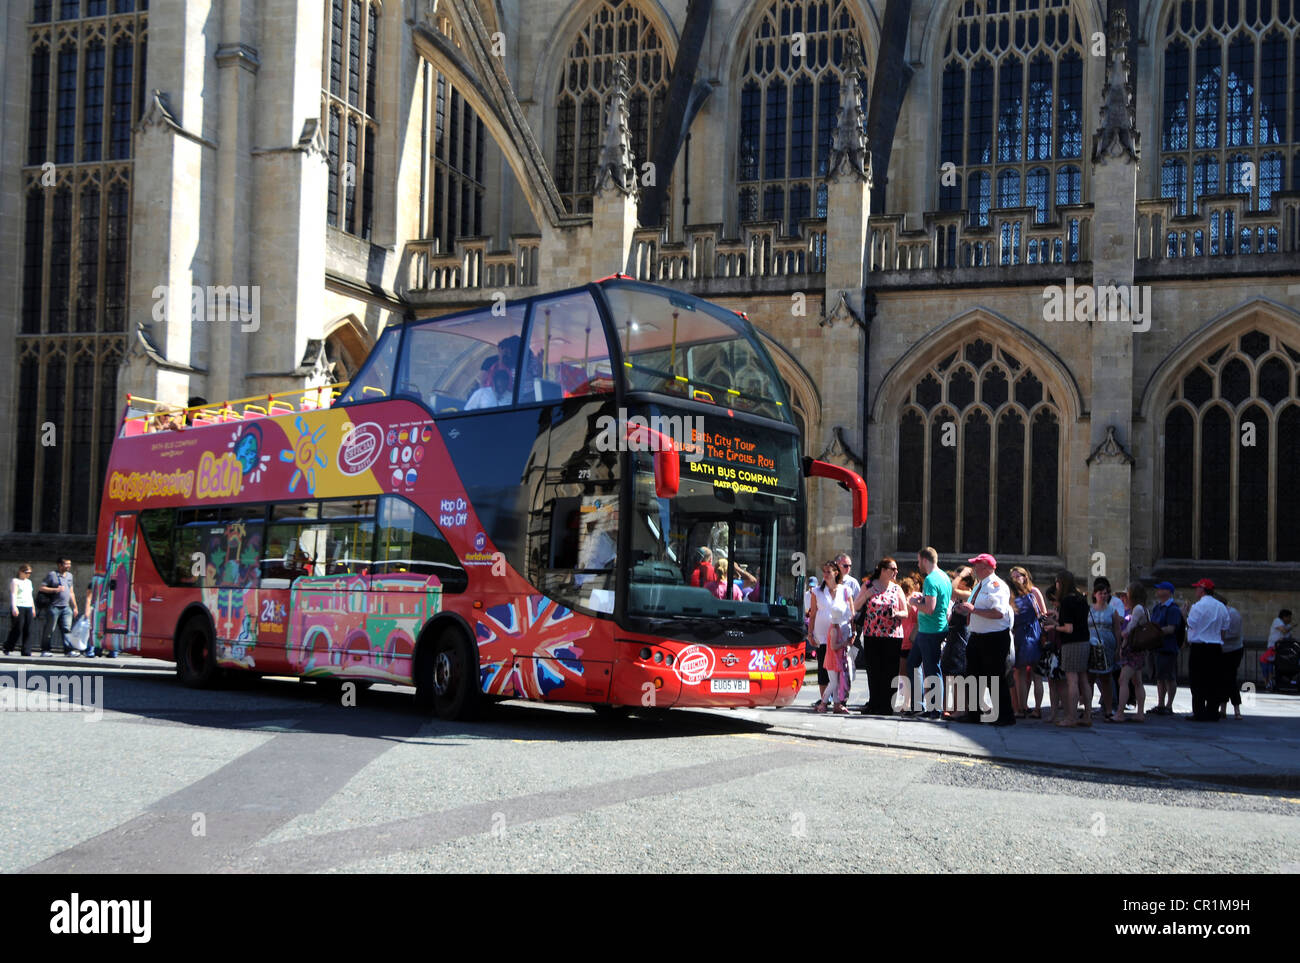 Autobus turistico, bagno, Somerset, Inghilterra, Regno Unito Foto Stock